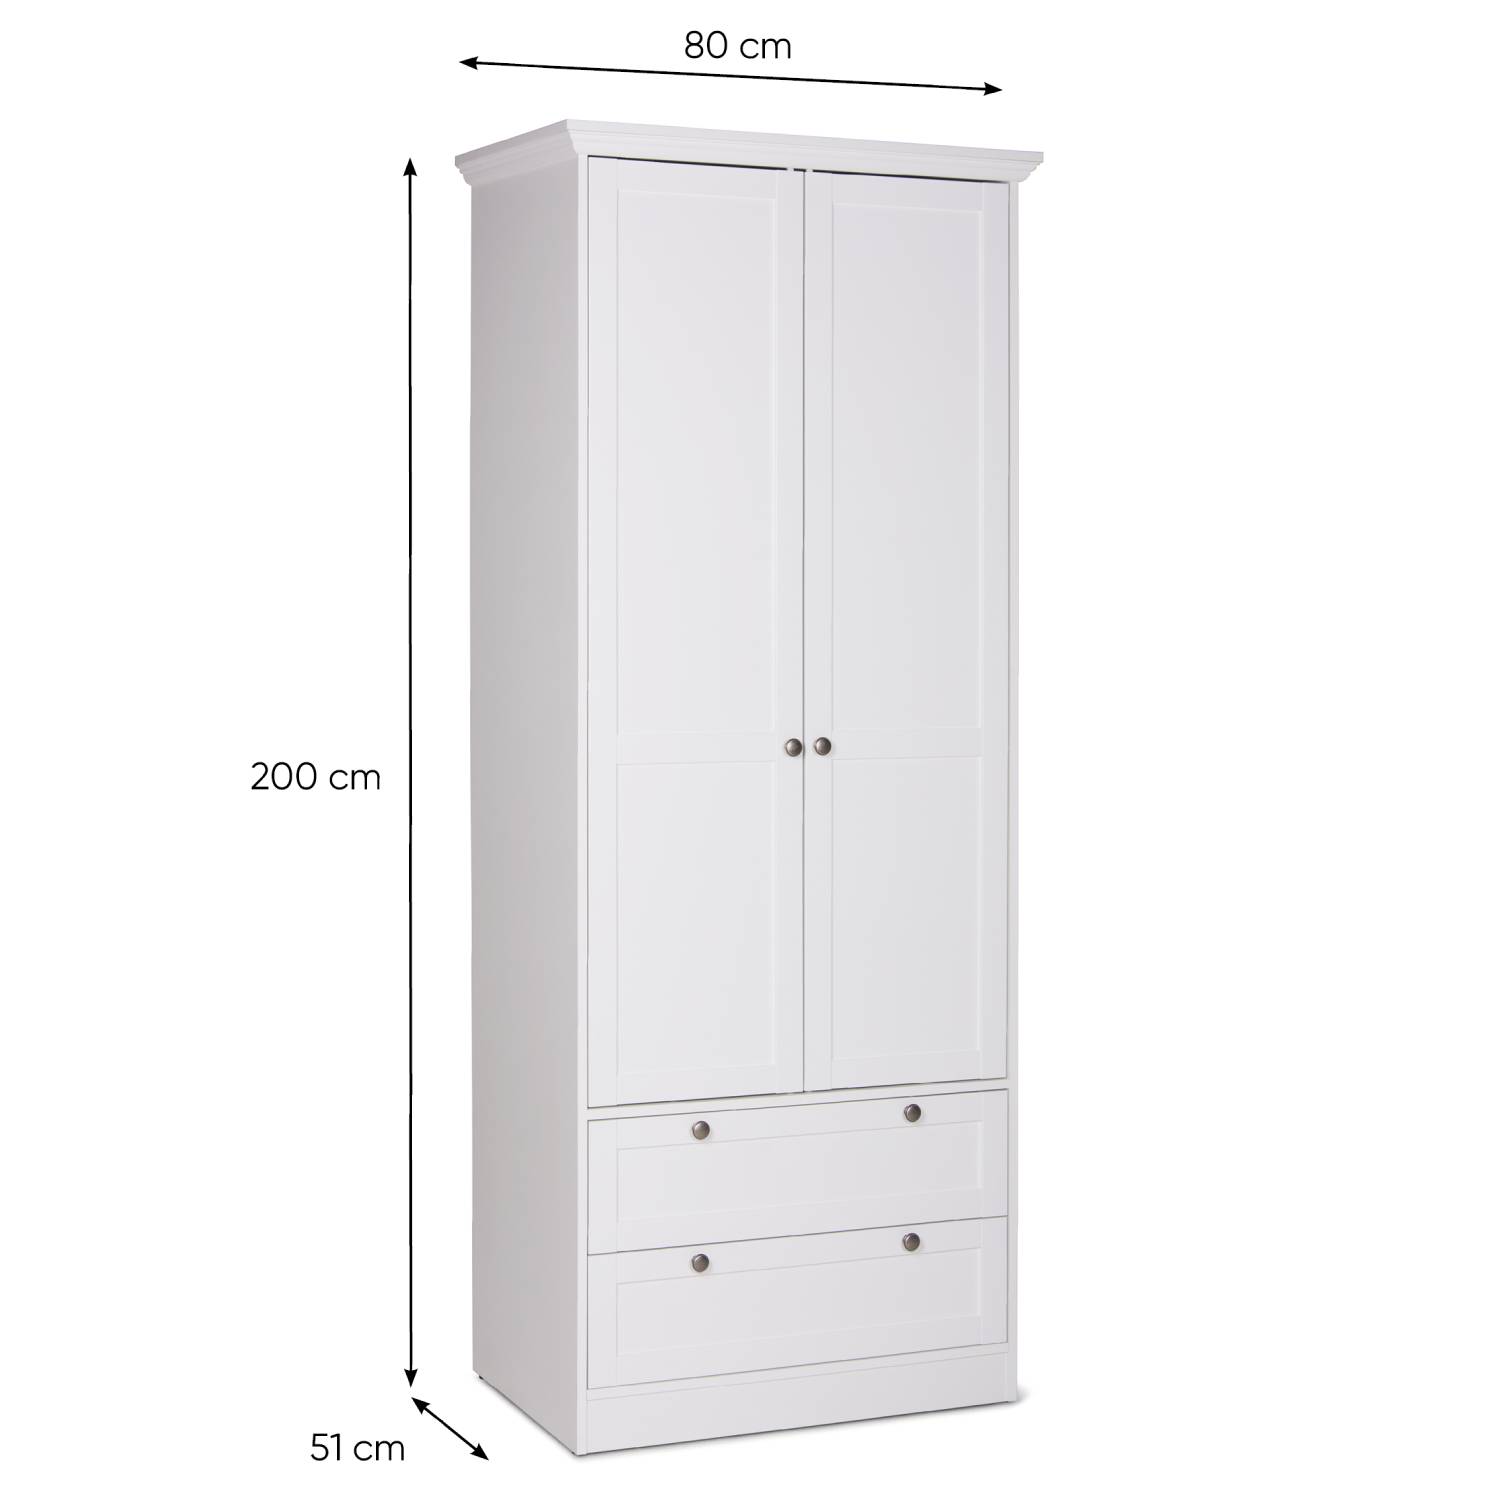 Kleiderschrank Weiß Garderobe Holz Schrank Massiv 2 Türen Garderobenschrank Mehrzweckschrank